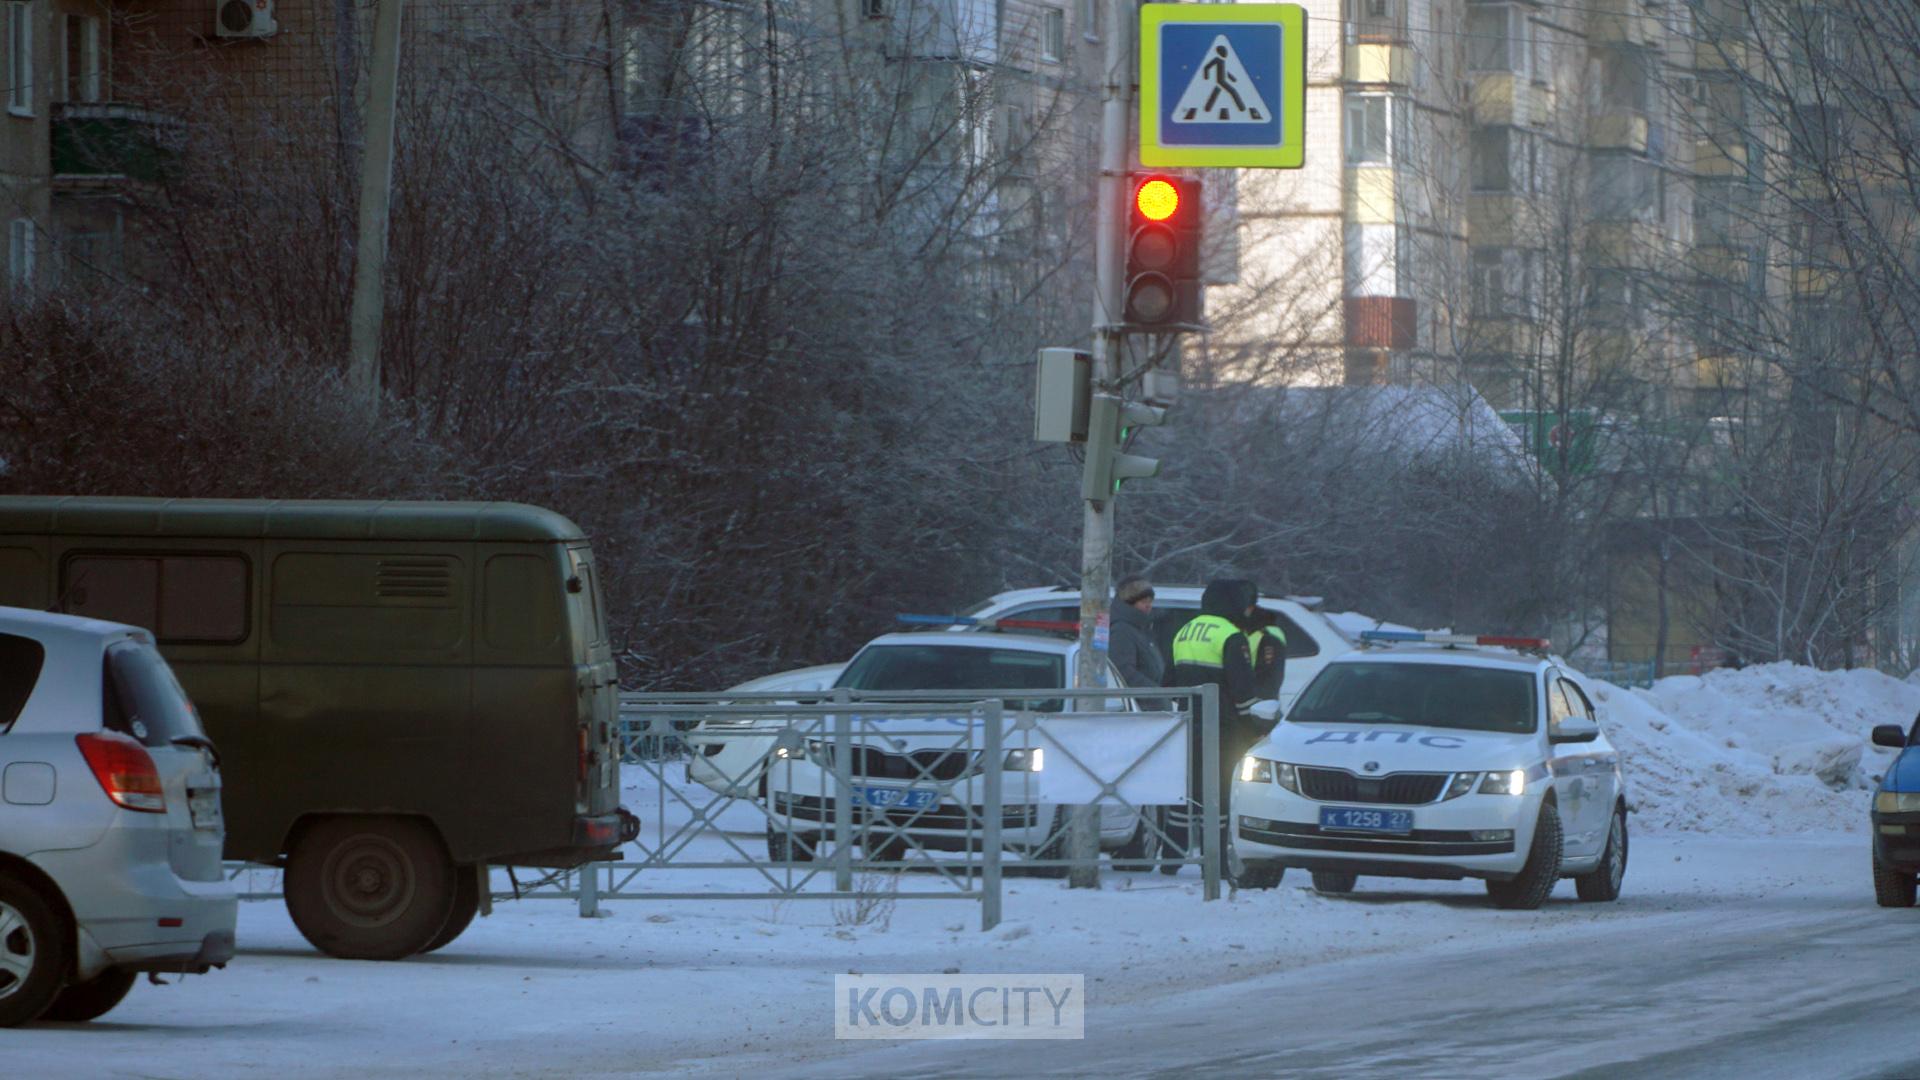 Сплошные проверки водителей на состояние опьянения будут проводиться в праздничные дни в Комсомольске